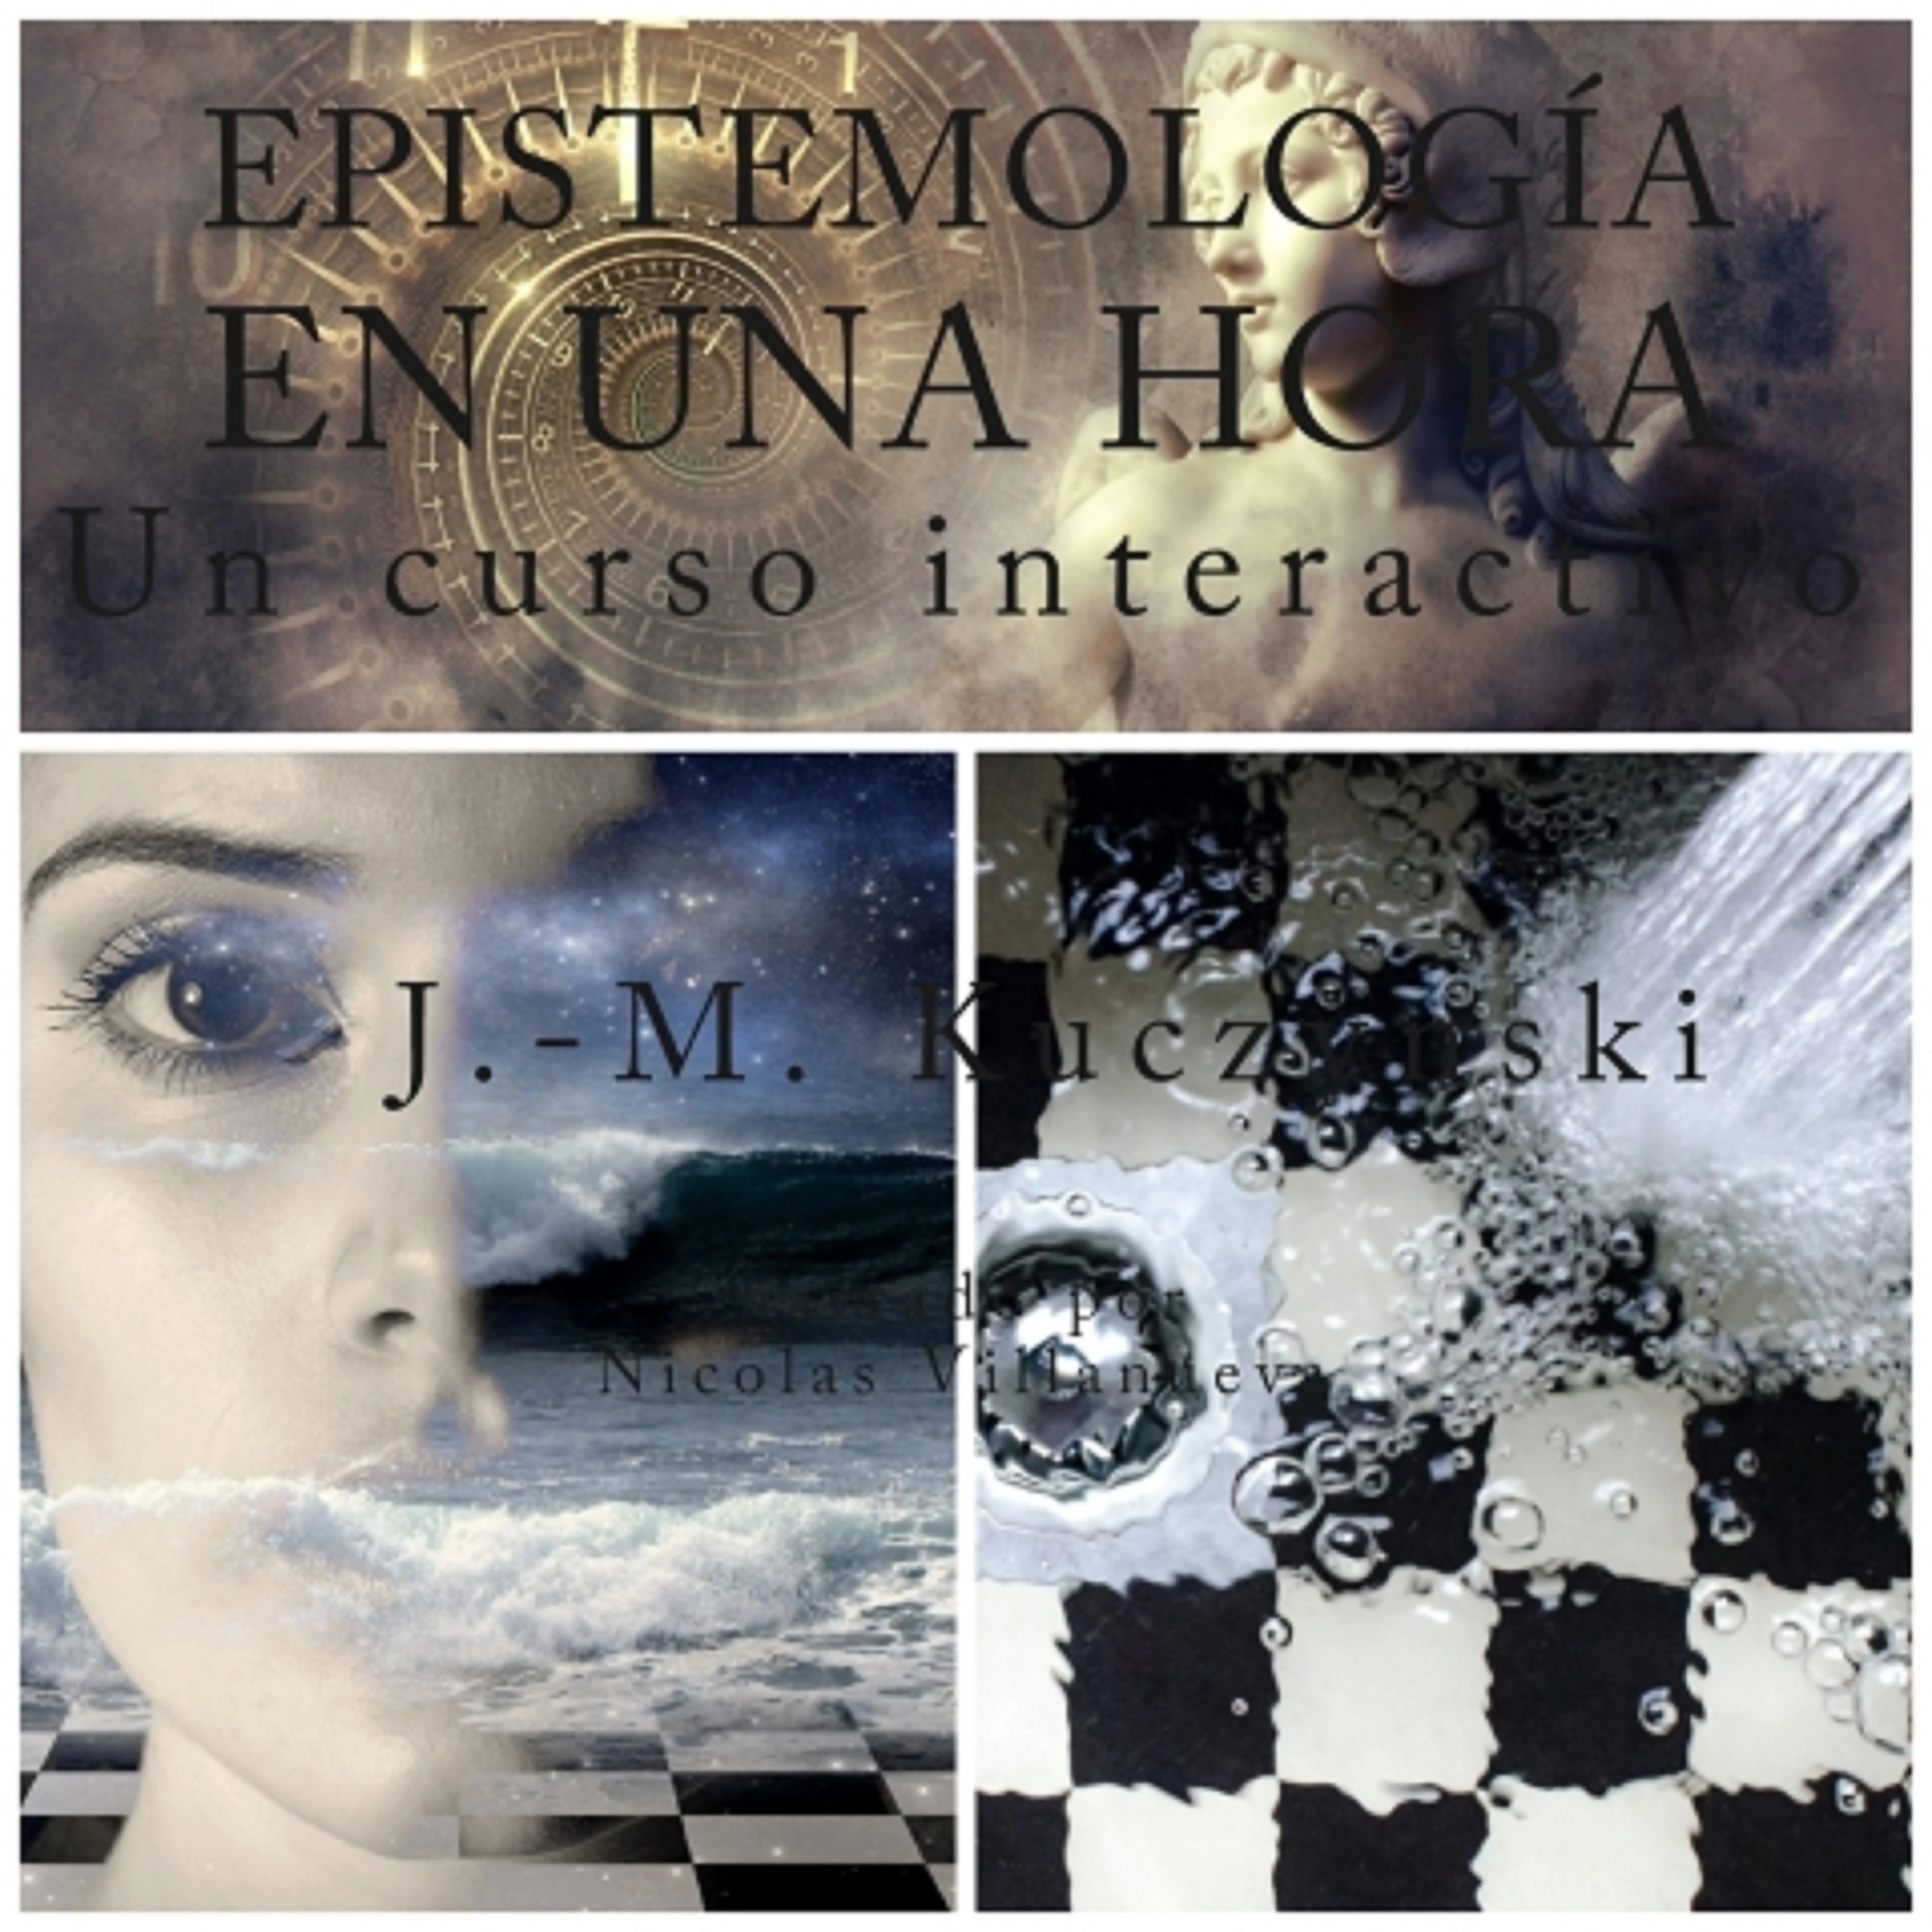 Epistemología en una hora: Un curso interactivo (Spanish Edition) Audiobook by John-Michael Kuczynski